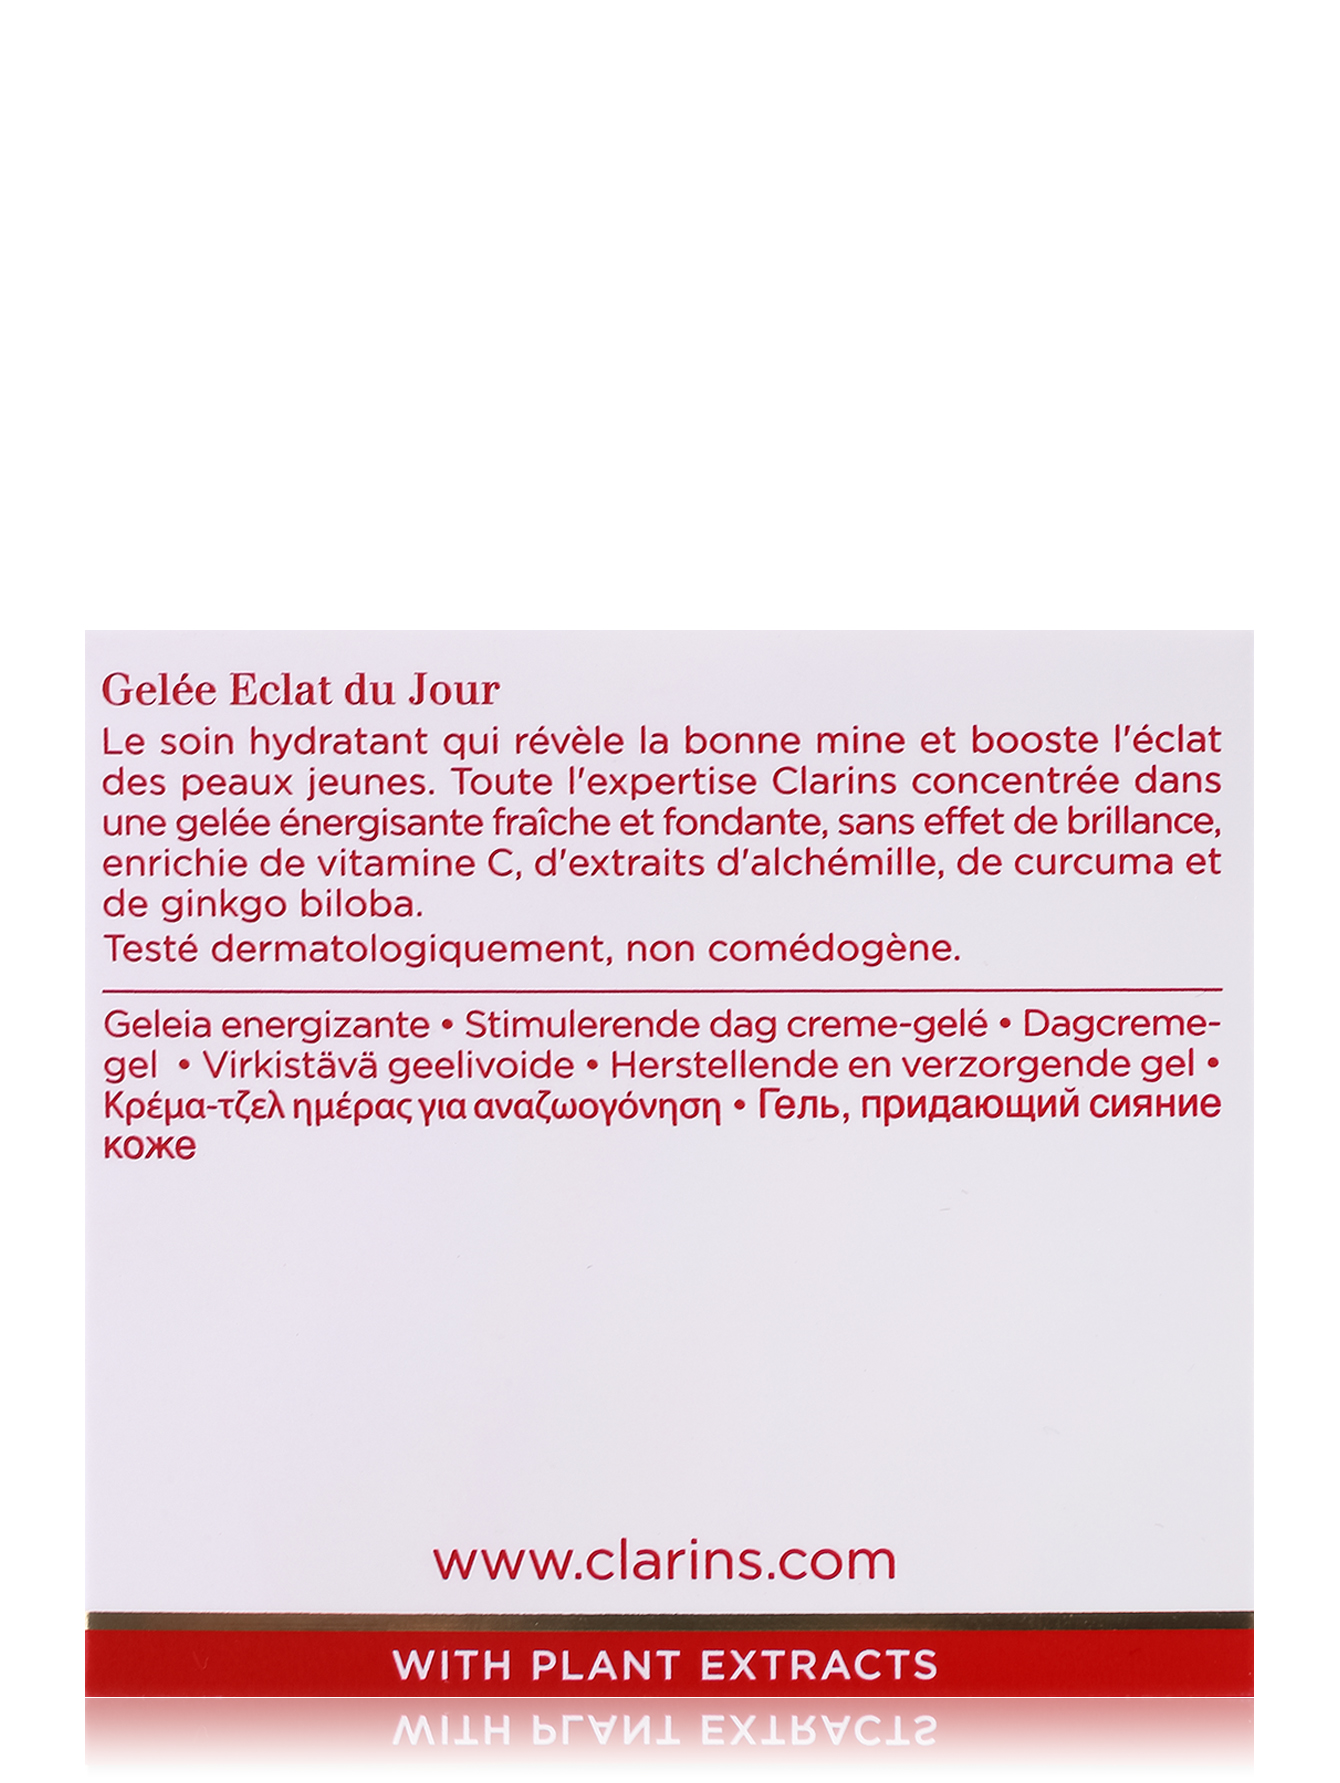 Гель придающий сияние кожи - Eclat du Jour, 30ml - Обтравка2